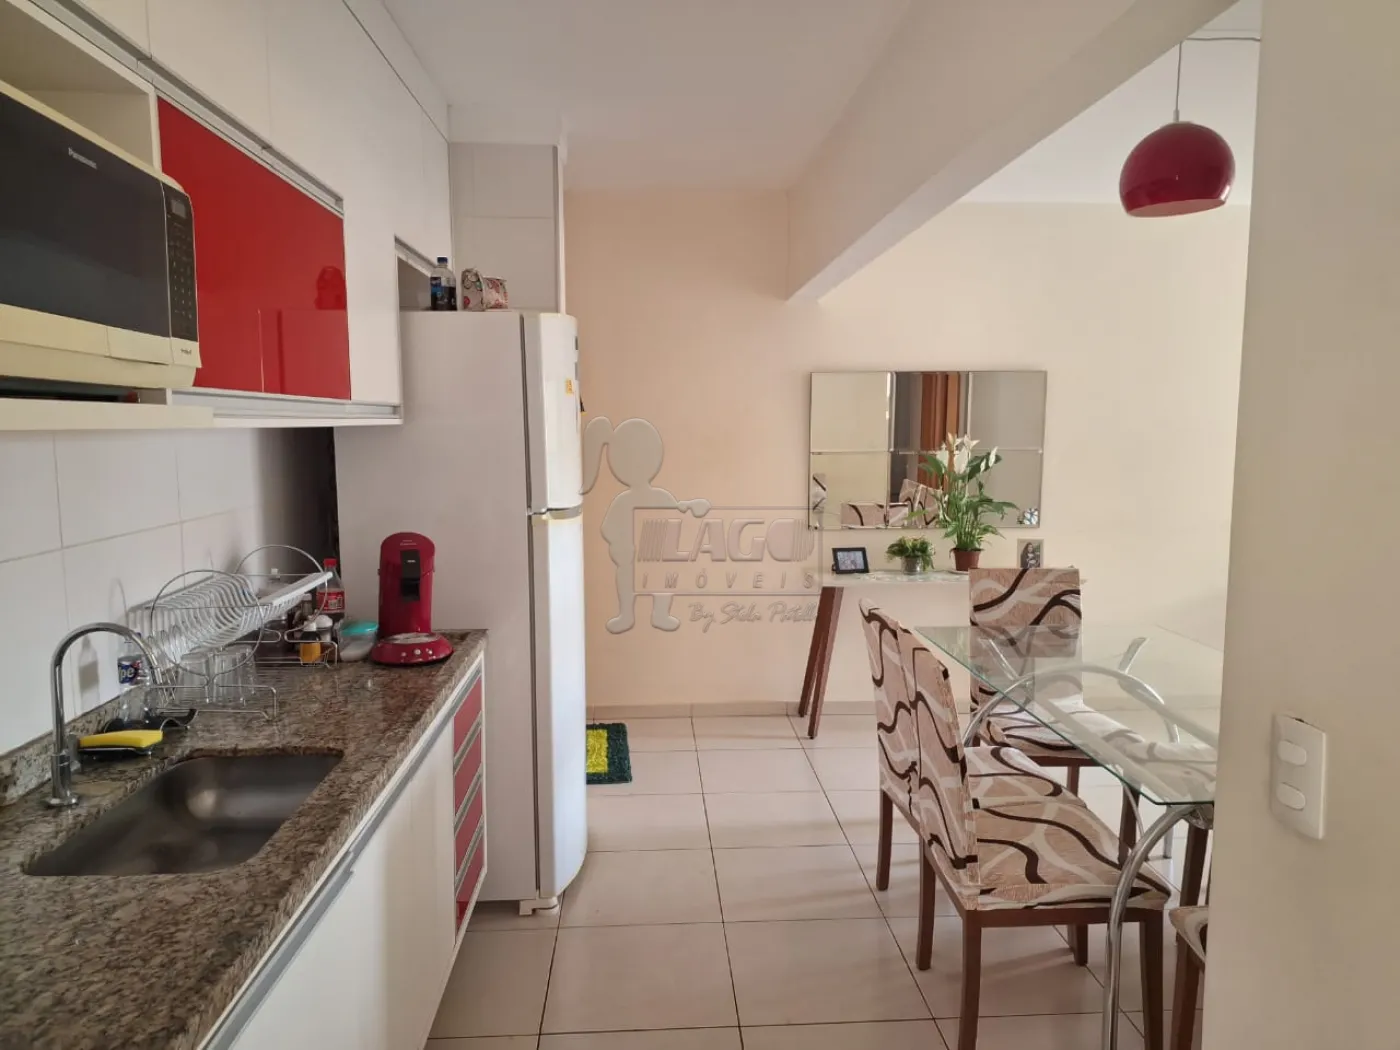 Comprar Apartamentos / Padrão em Ribeirao Preto R$ 350.000,00 - Foto 8